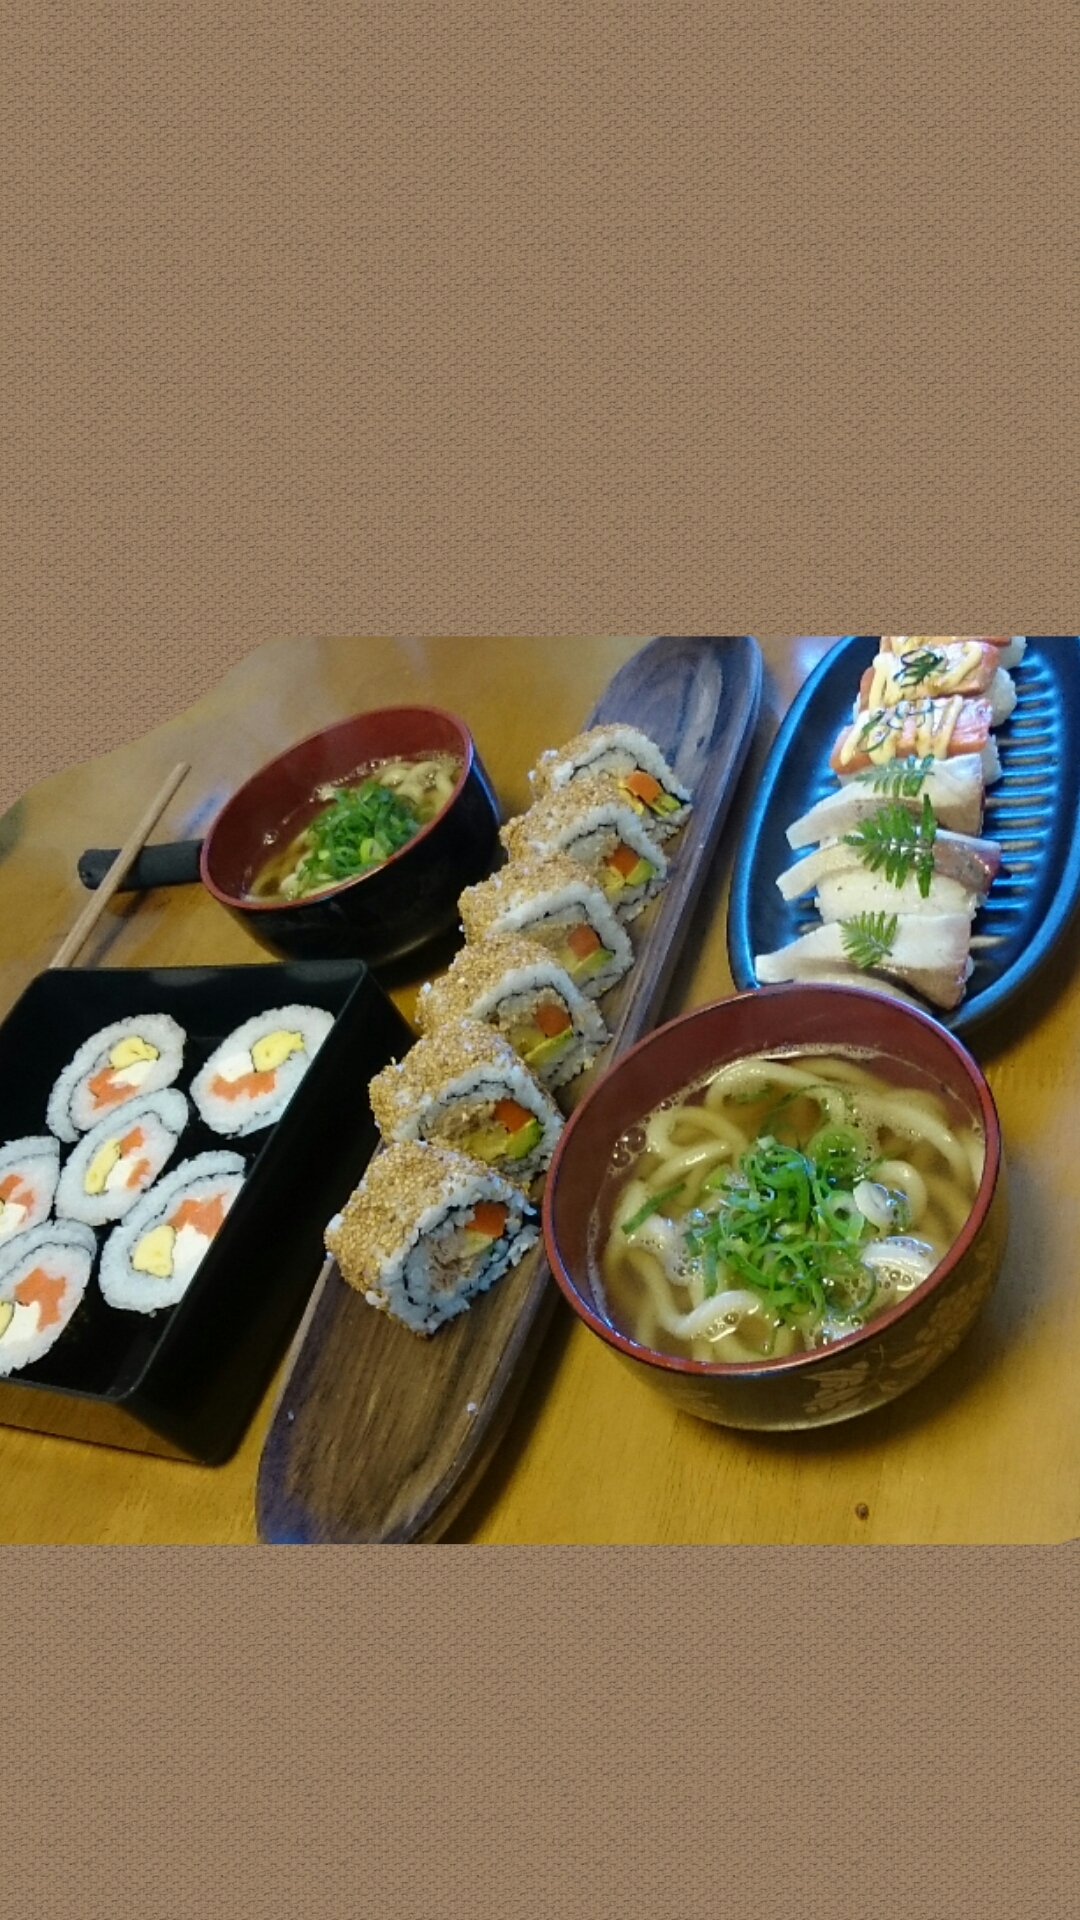 炙り寿司と太巻き寿司のミニうどんセット